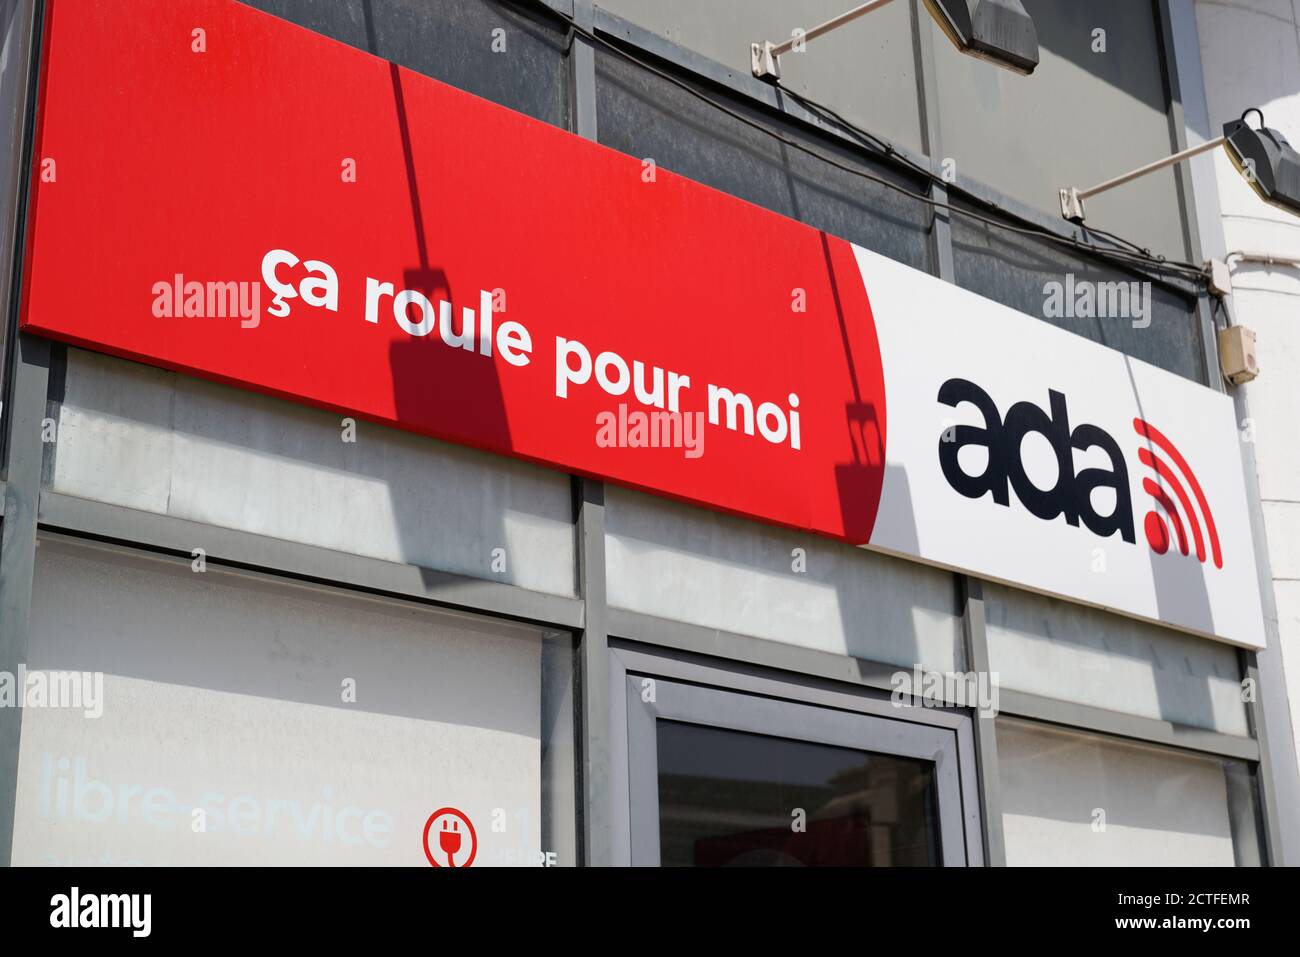 Bordeaux , Aquitaine / France - 09 20 2020 : Bureau de location de voitures  Ada en France logo magasin rue Photo Stock - Alamy